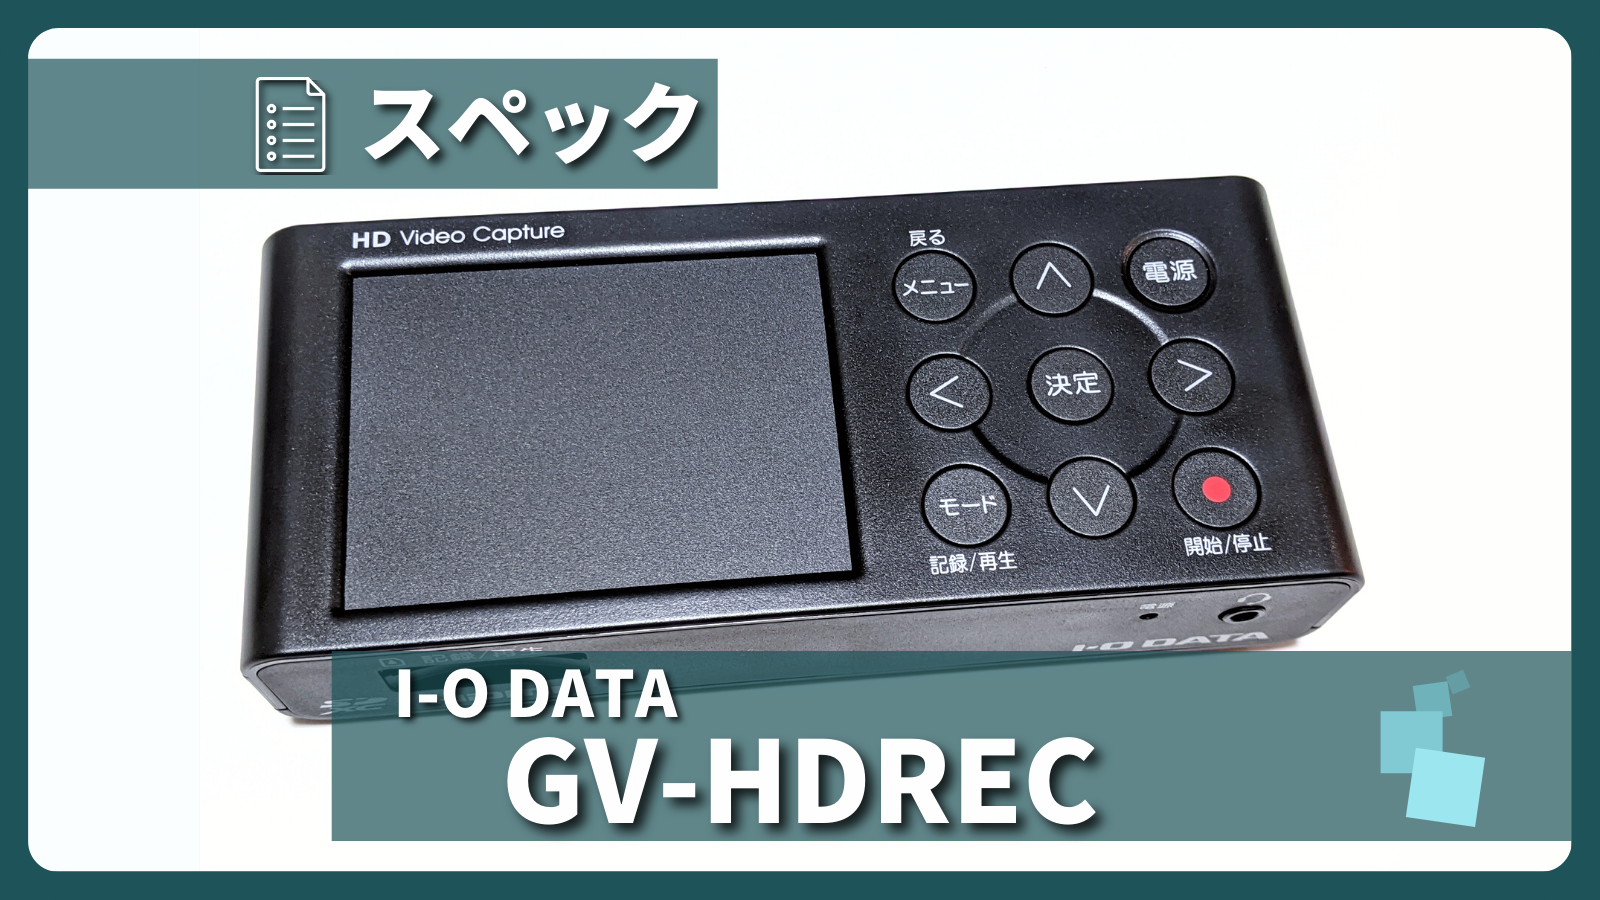 アイキャッチ画像・I-O DATA GV-HDREC スペック紹介